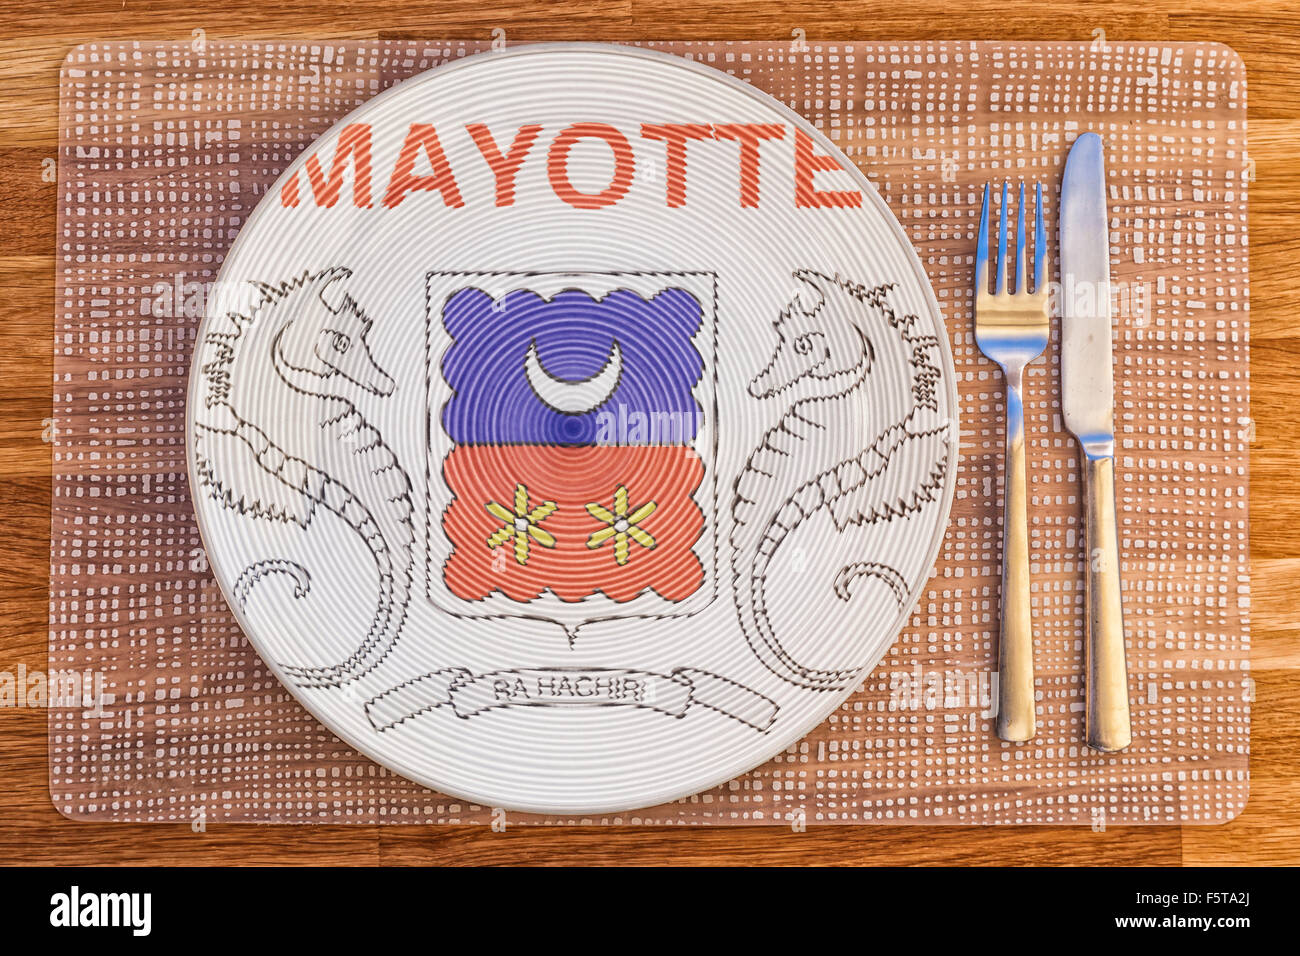 Mayotte flag : 1 170 images, photos de stock, objets 3D et images